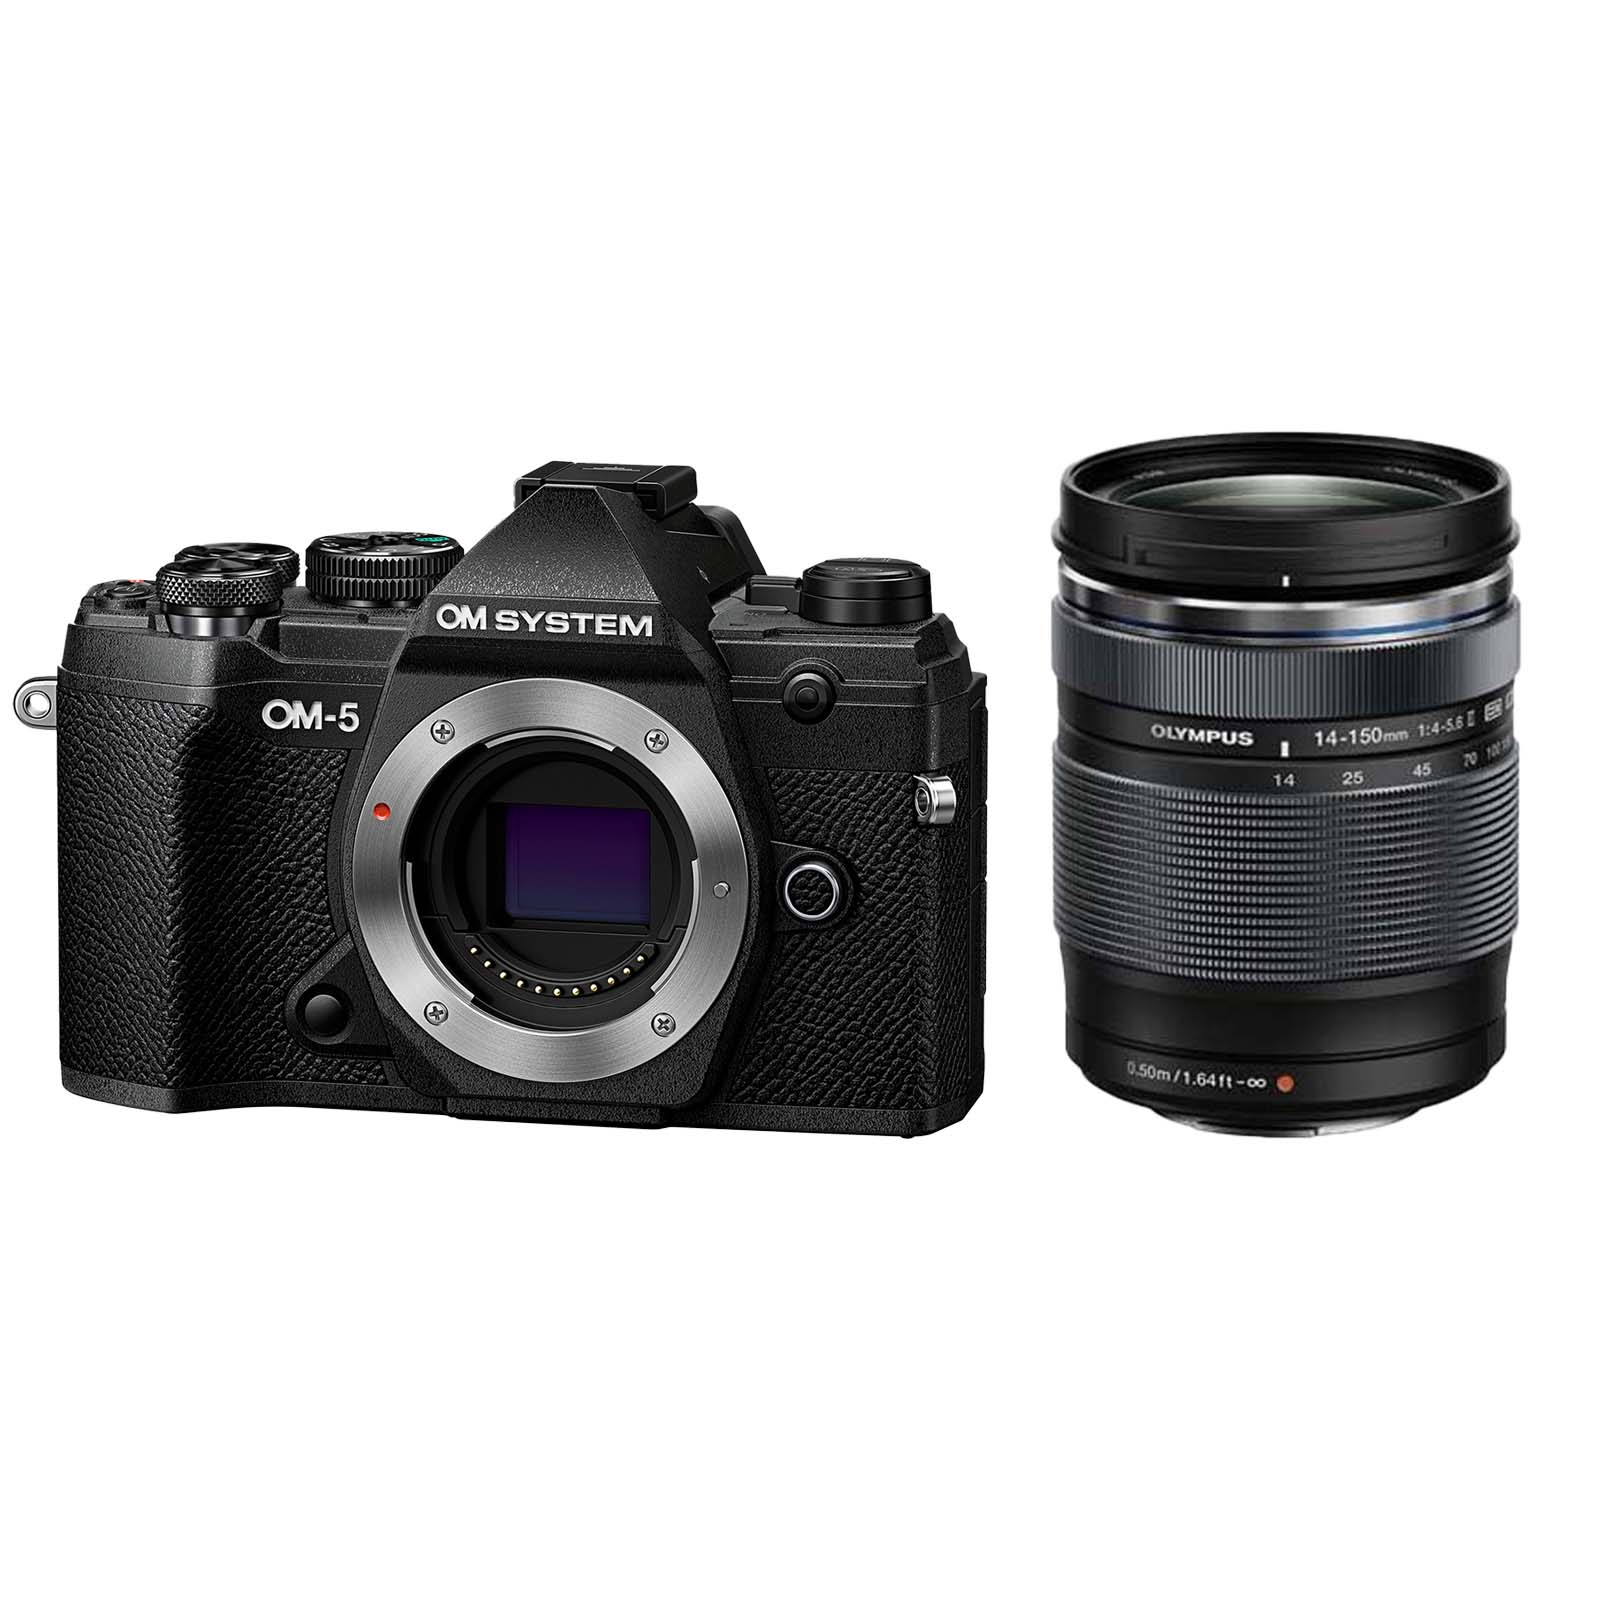 Image of OM SYSTEM OM5 Digital Camera with 14150mm F456 II Lens Black